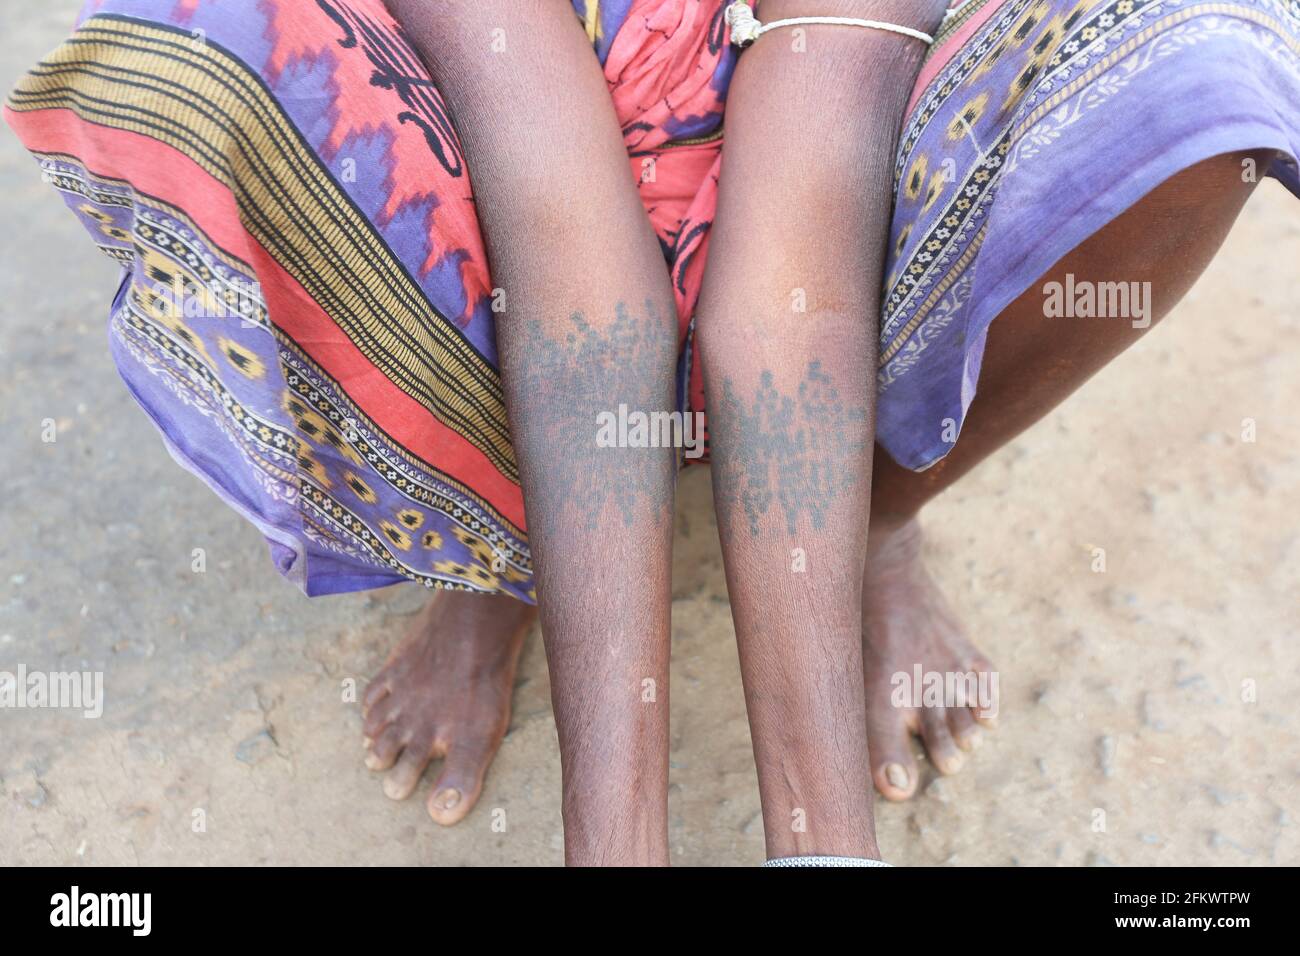 Woman showing tattoos on arm. DESIA KONDHA TRIBE. Goipeta Village, Odisha, India Stock Photo